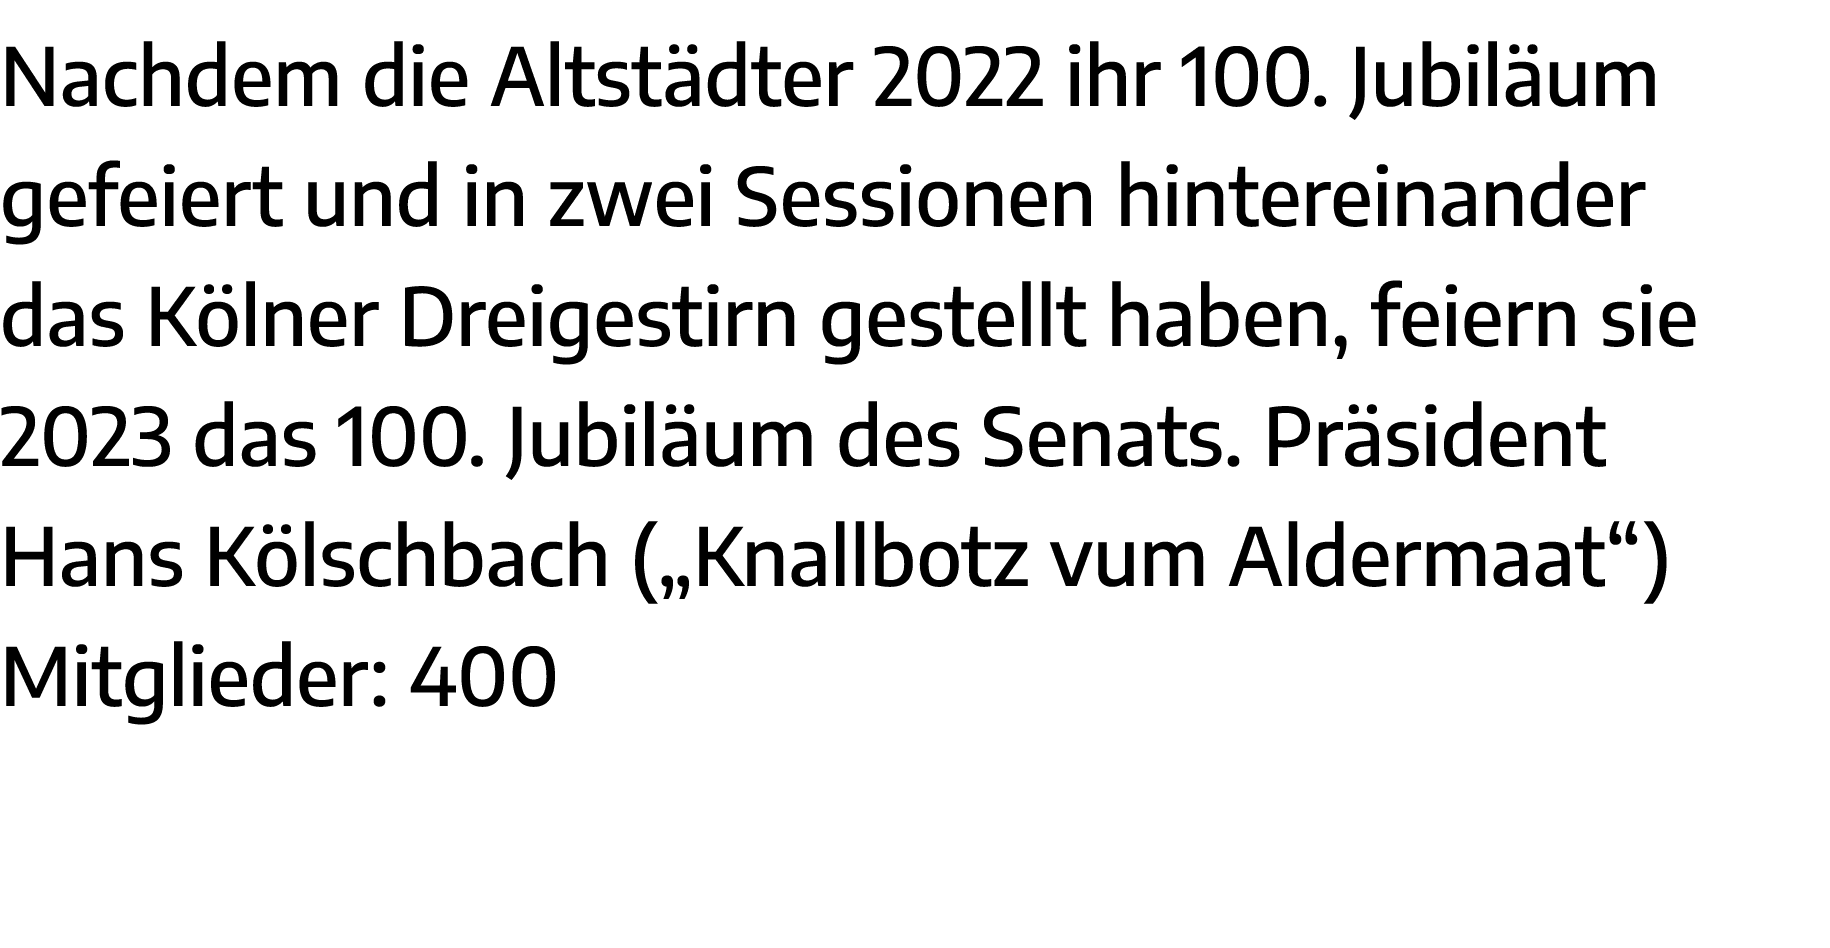 Nachdem die Altstädter 2022 ihr 100  Jubiläum gefeiert und in zwei Sessionen hintereinander das Kölner Dreigestirn ge   